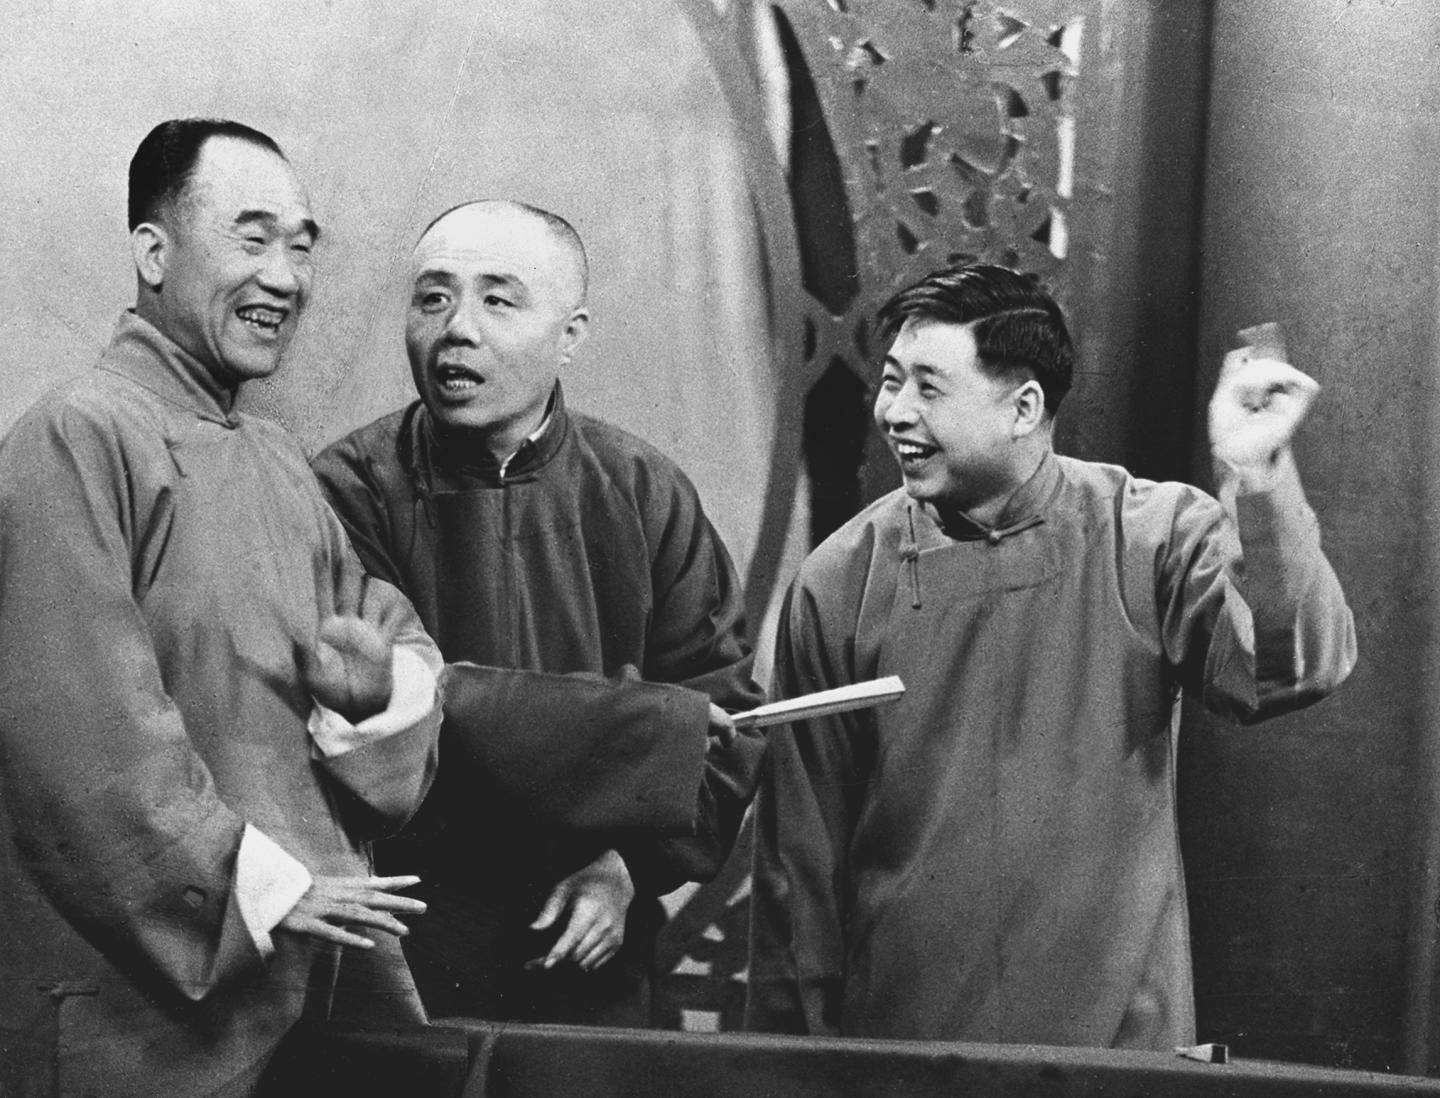 资料图 图为著名相声演员侯宝林(左),刘宝瑞(中),马季(右)在北京电视